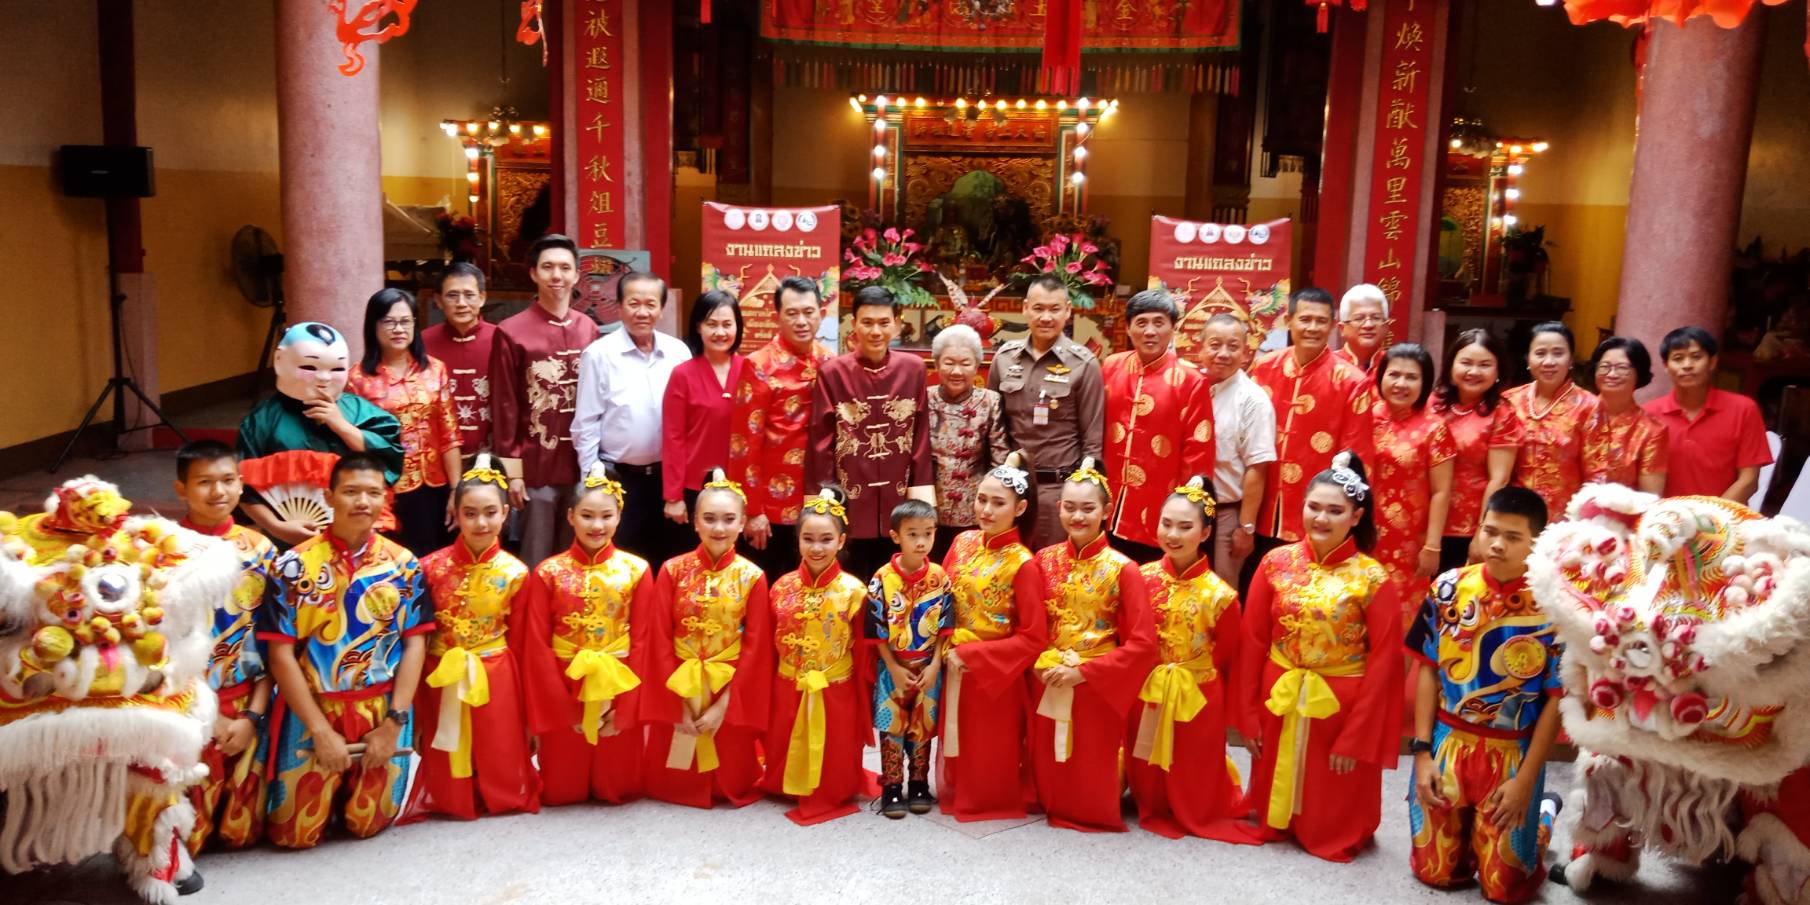 จังหวัดเชียงใหม่มีงานยิ่งใหญ่เทศกาลไชน่าทาวน์่ ครั้งที่ 18 ณ ศาลเจ้ากวนอู ระหว่างวันที่ 25 – 26 มกราคม 2563นี้